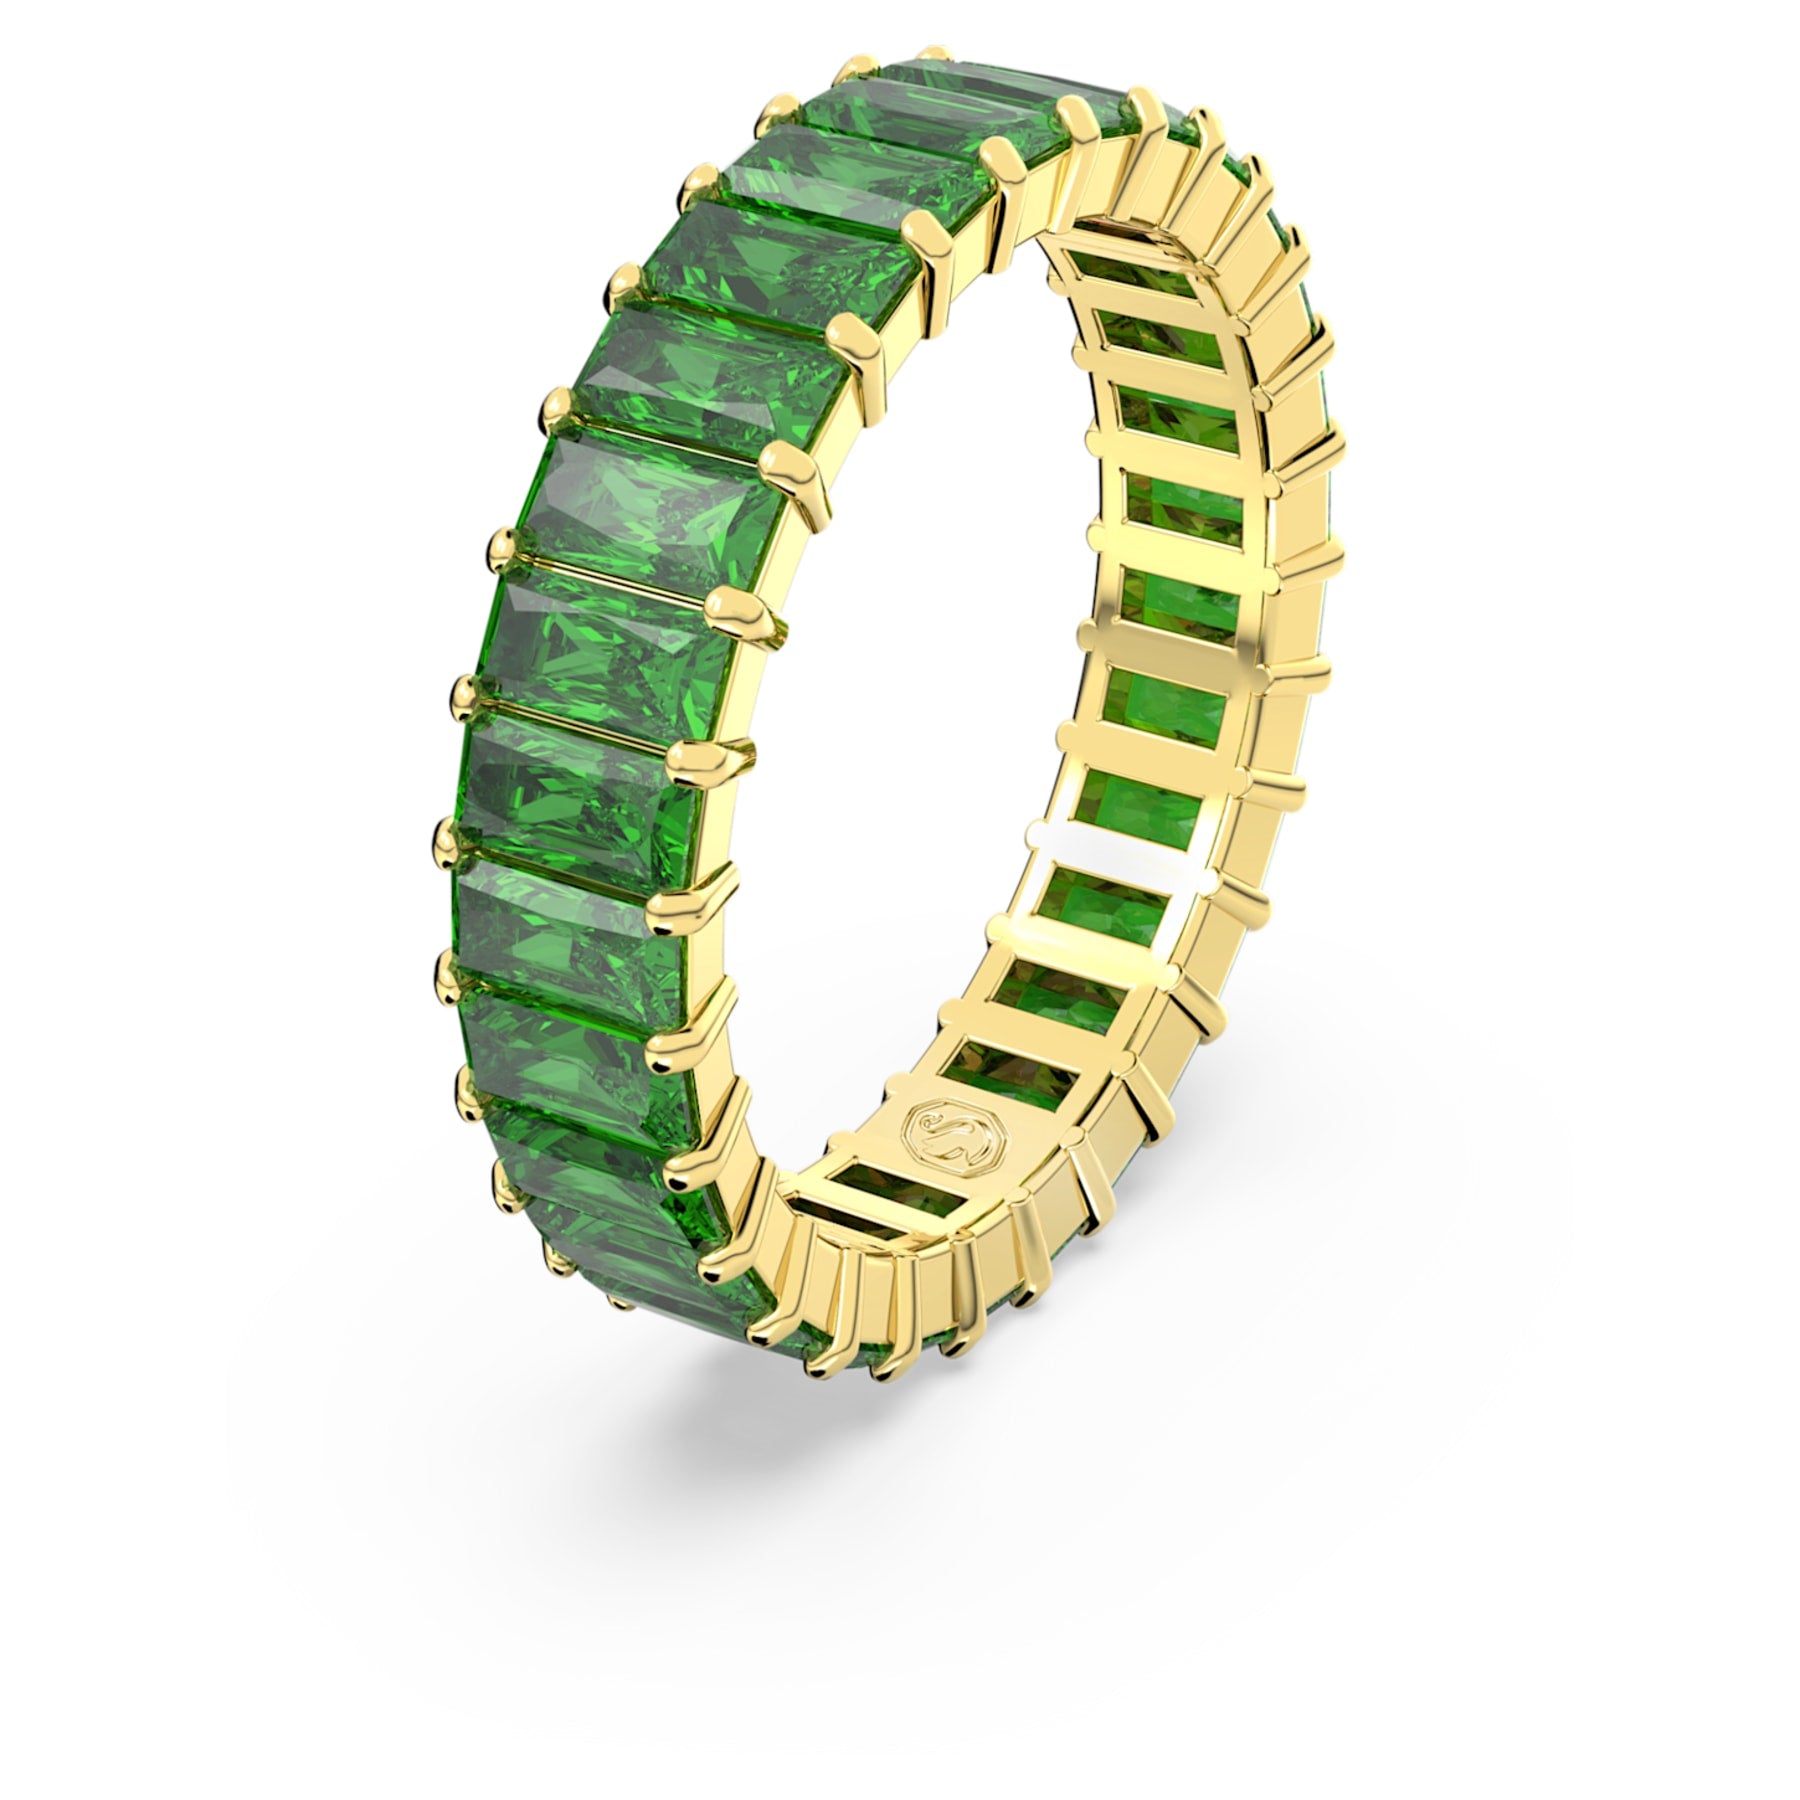 Matrix - Goldgrün - Ring - Swarovski